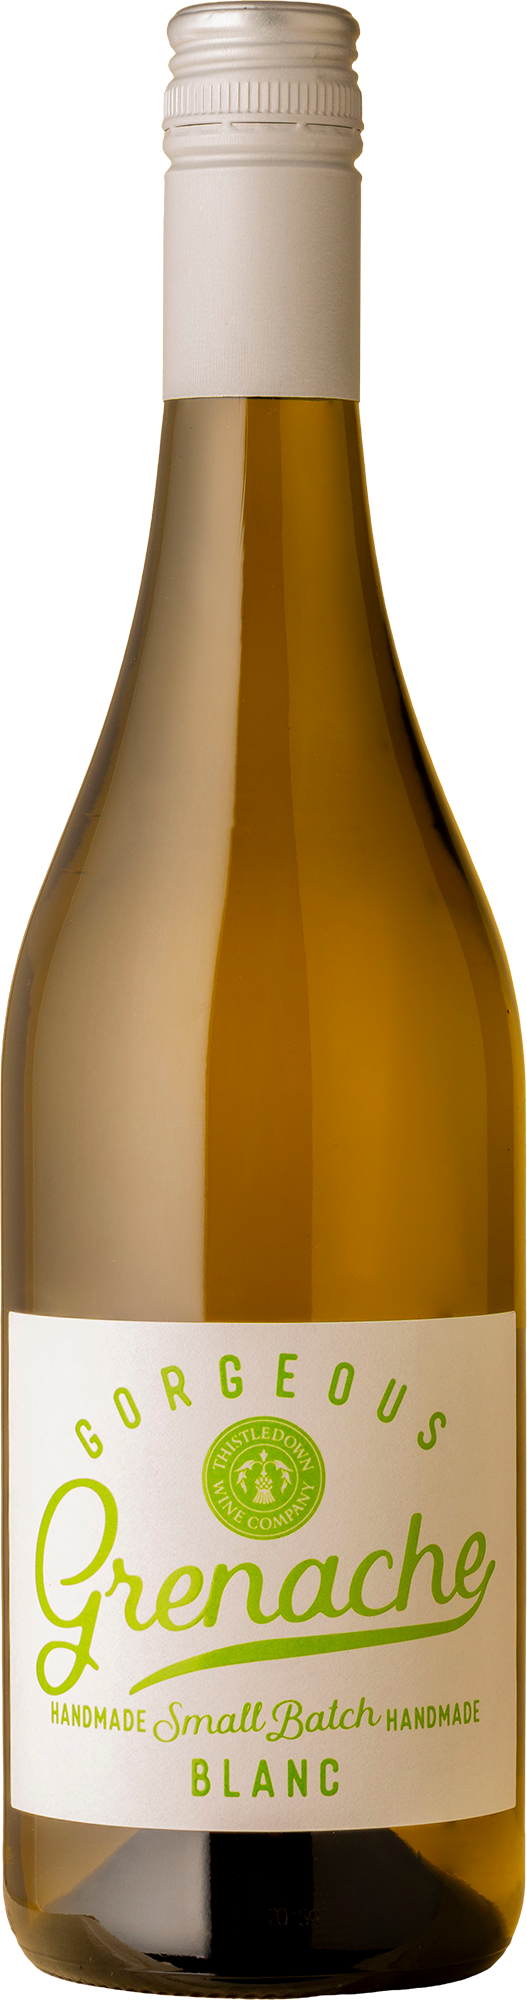 Thistledown - Gorgeous Grenache Blanc 2022 White Wine